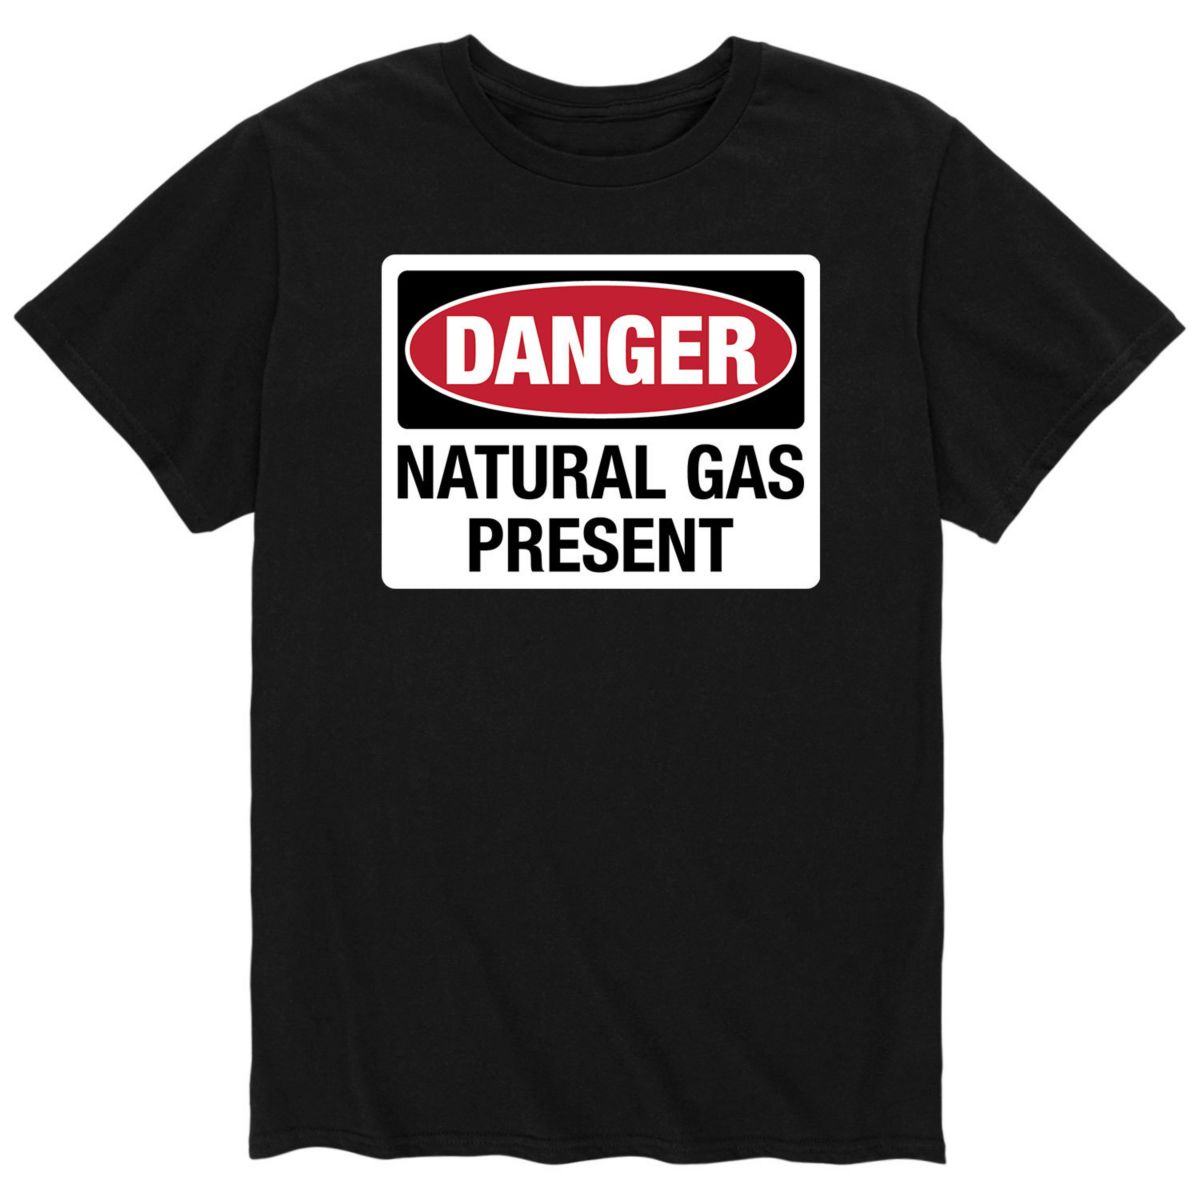 Natural dangers